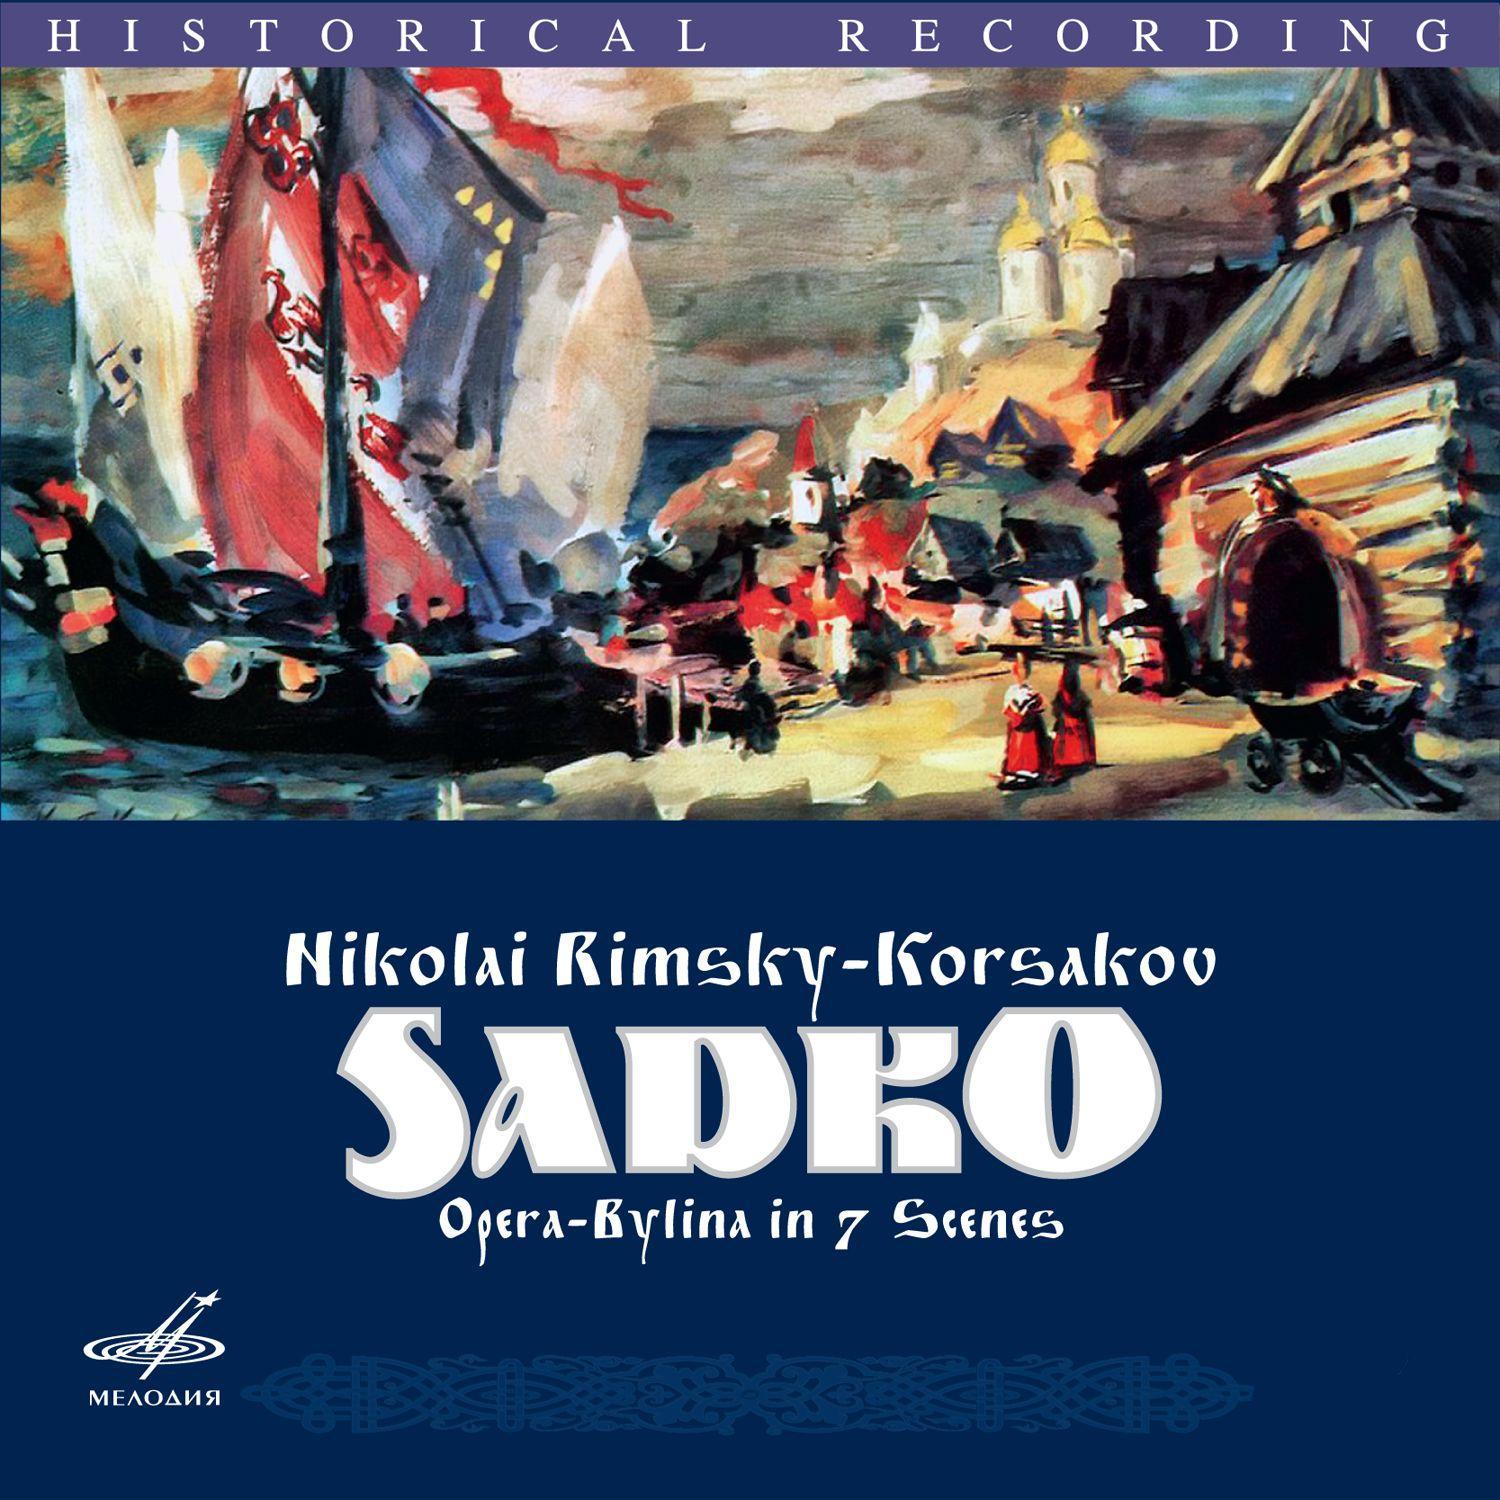 Nikolai Rimsky-Korsakov - Sadko, Op. 5, Scene I: Scene of Sadko With Chorus 